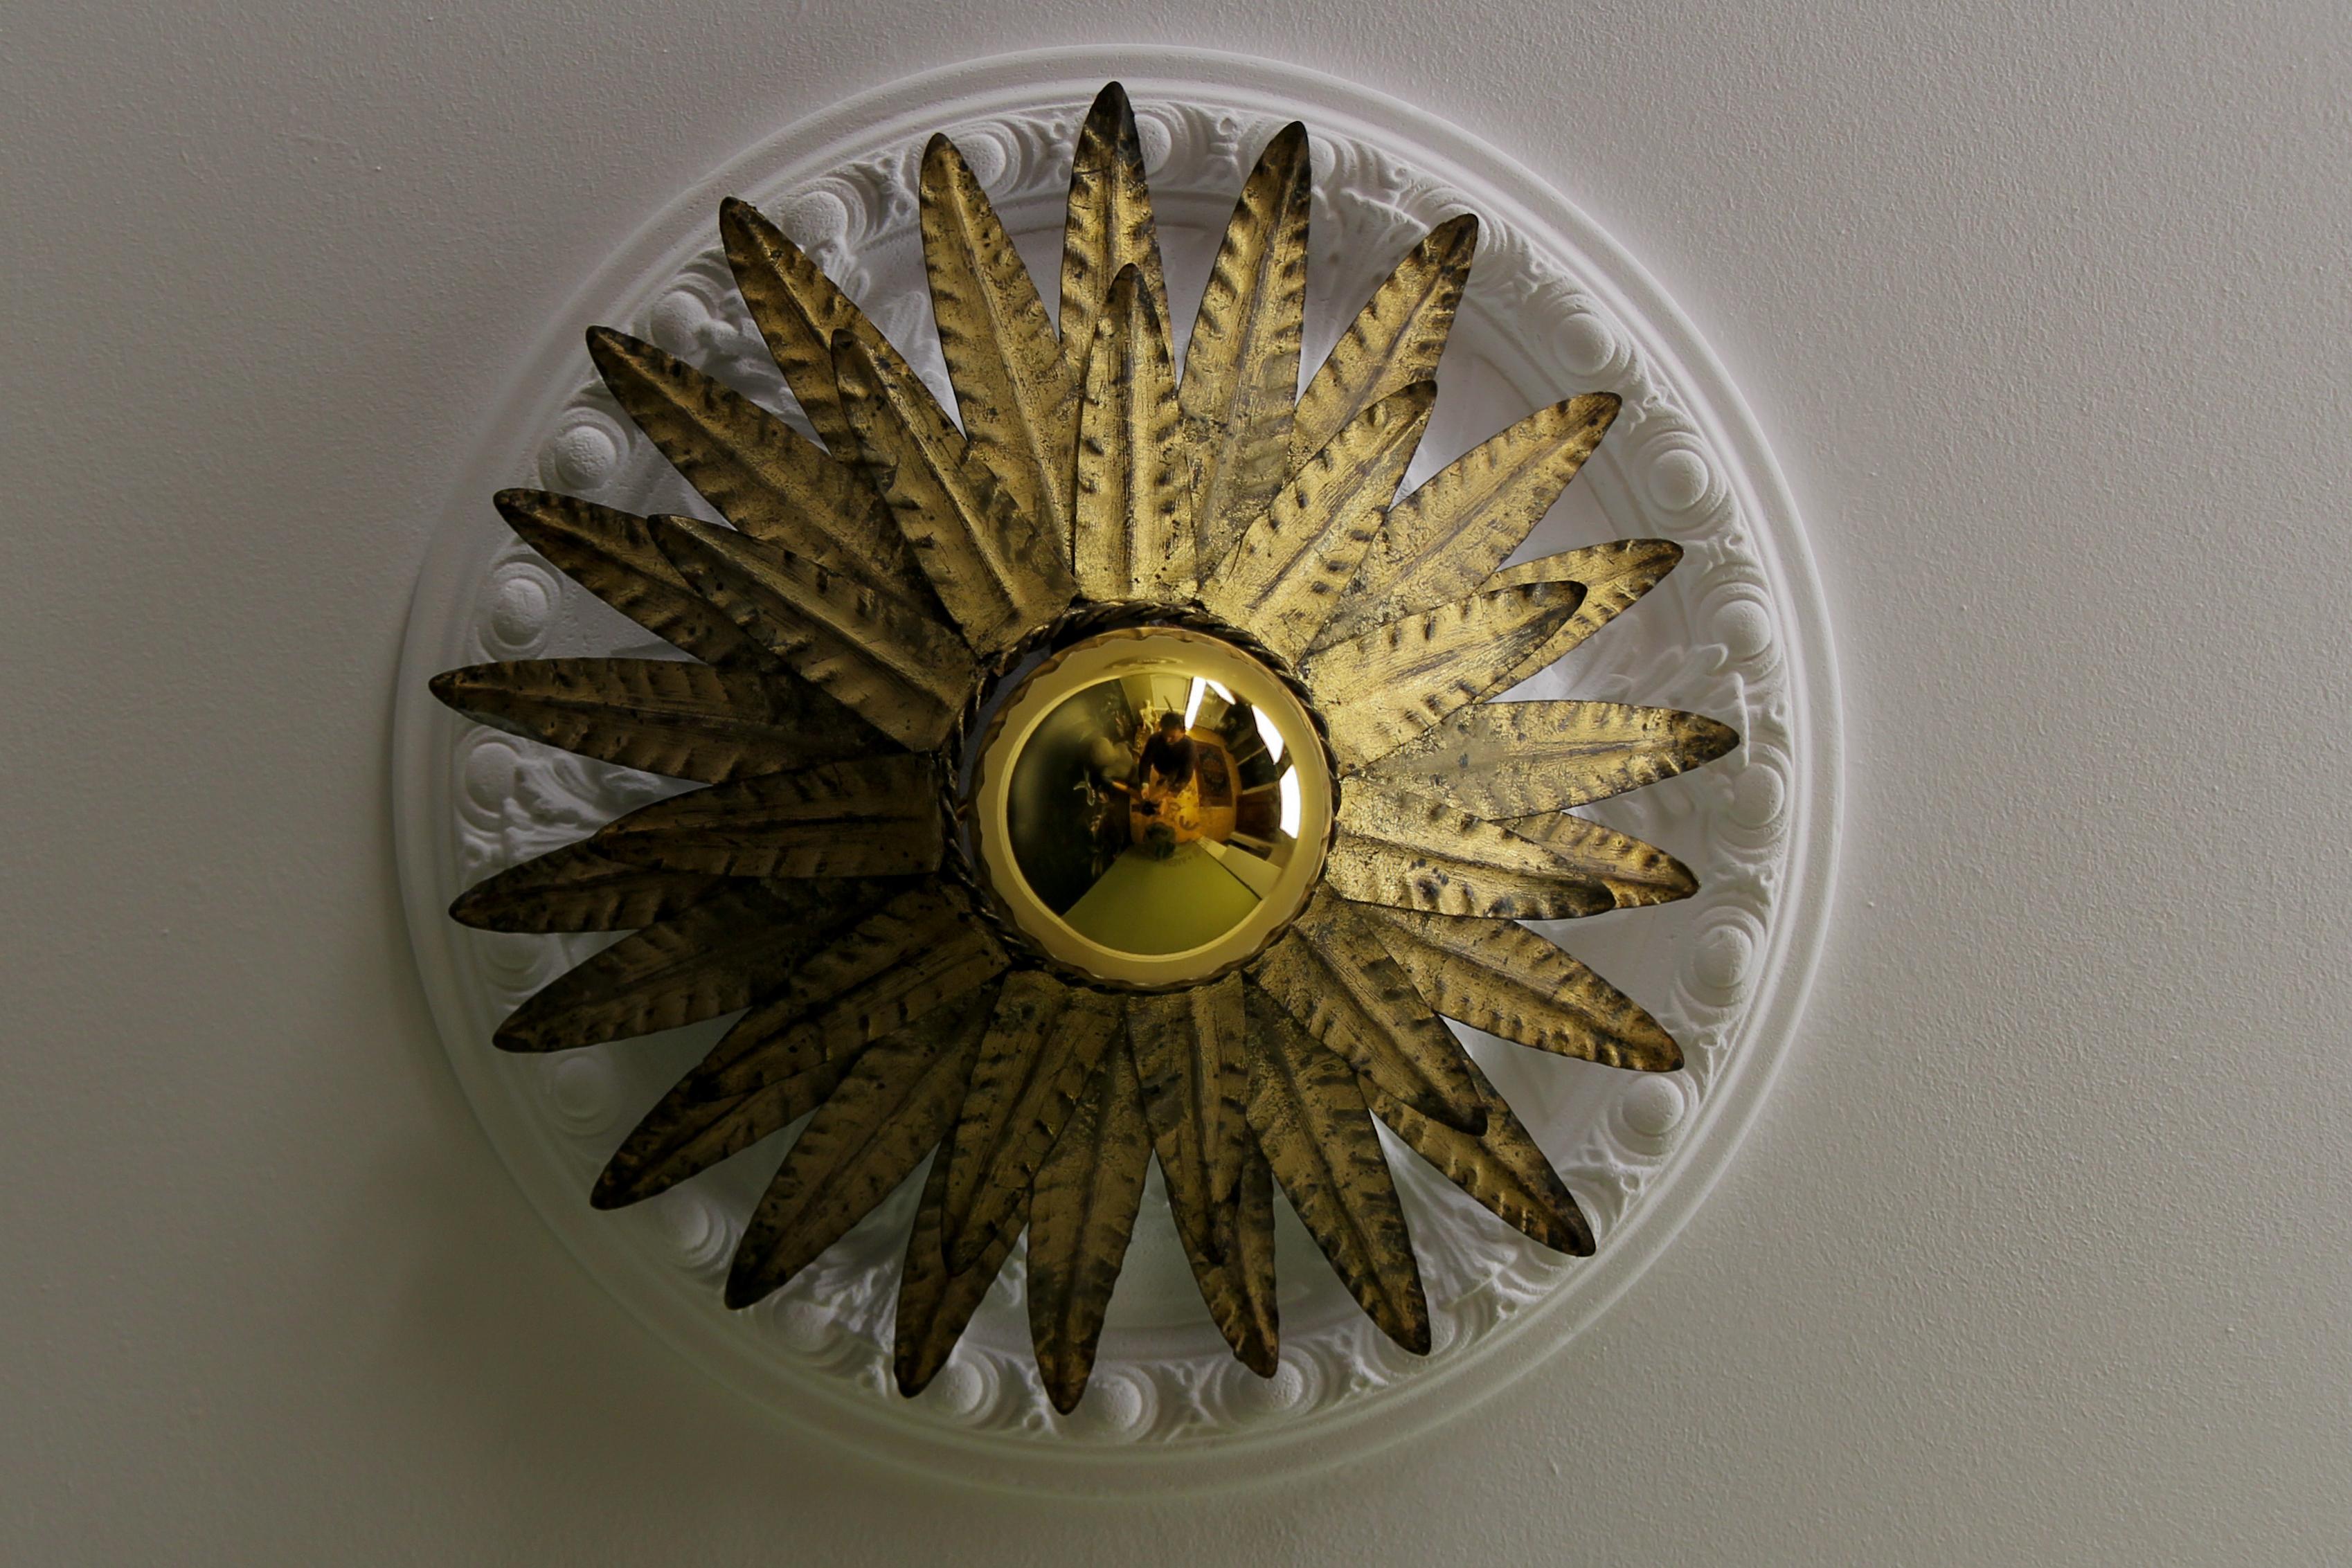 Plafonnier Hollywood Regency en métal doré avec couronne en forme de soleil, Espagne, vers les années 1960.
Ce remarquable plafonnier en forme de soleil ou de couronne présente deux couches de feuilles en métal doré entourant l'ampoule centrale